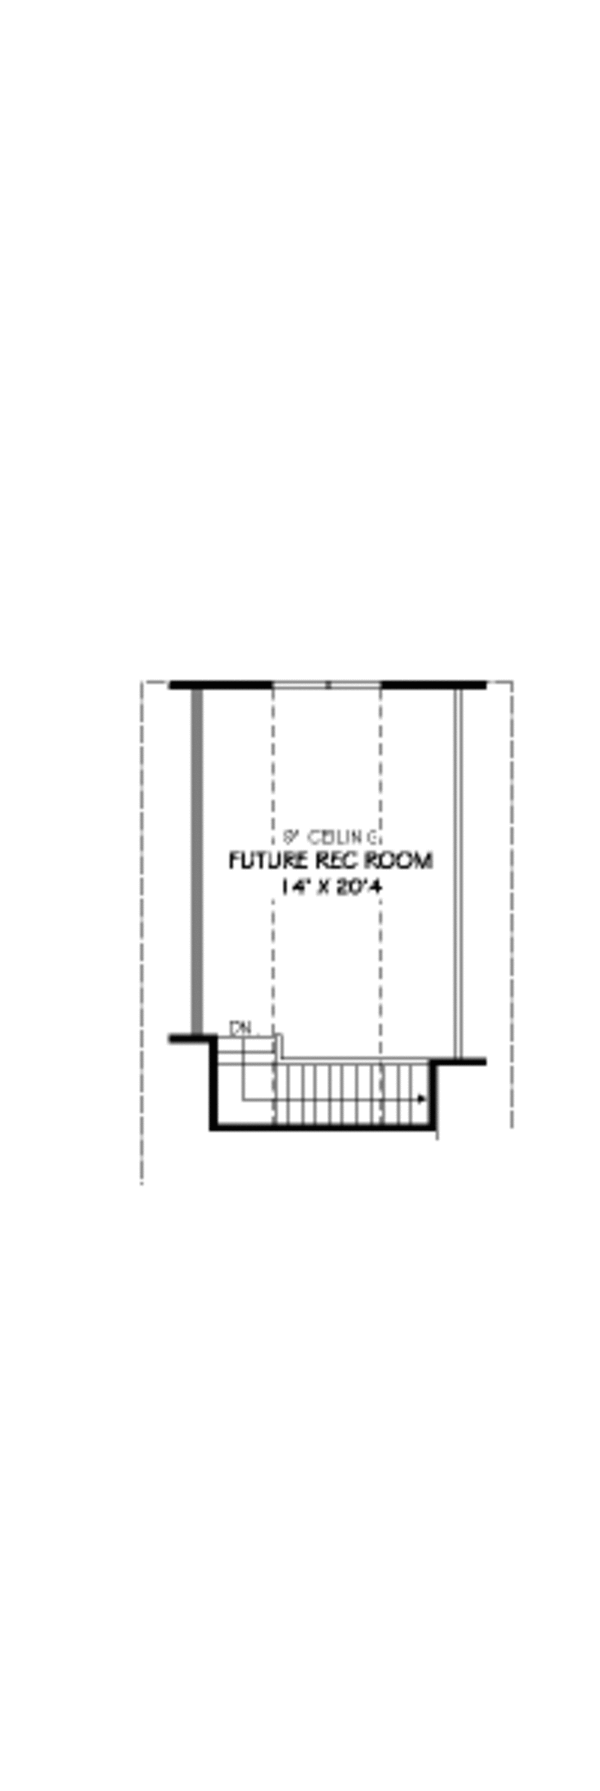 European Floor Plan - Upper Floor Plan #424-123